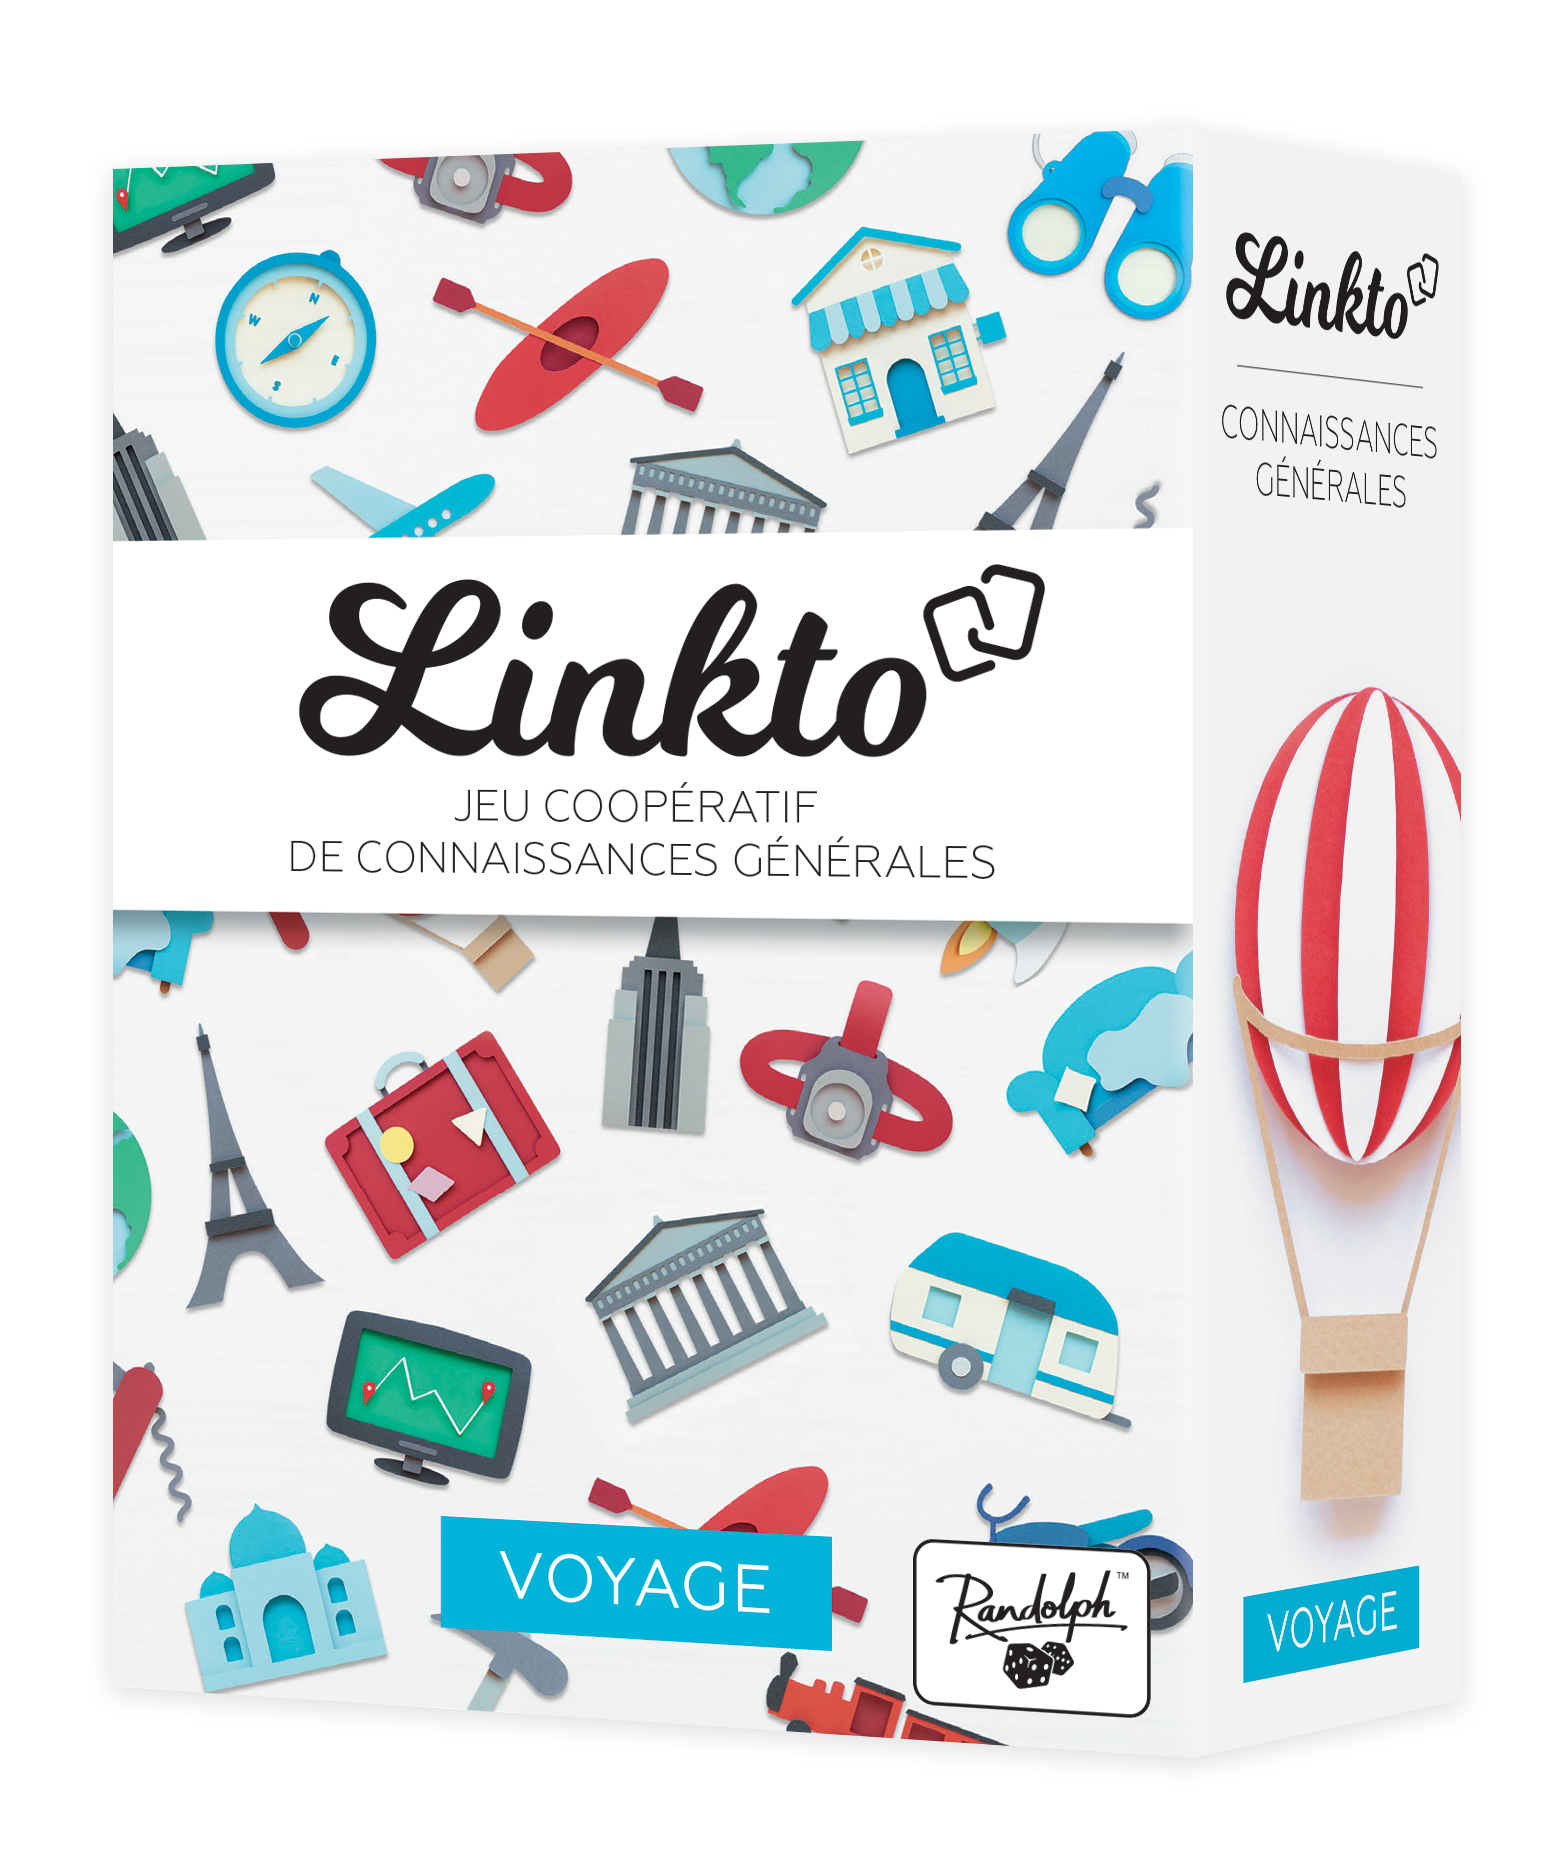 Linkto : Voyage - LilloJEUX - Boutique de jeux de société québécoise